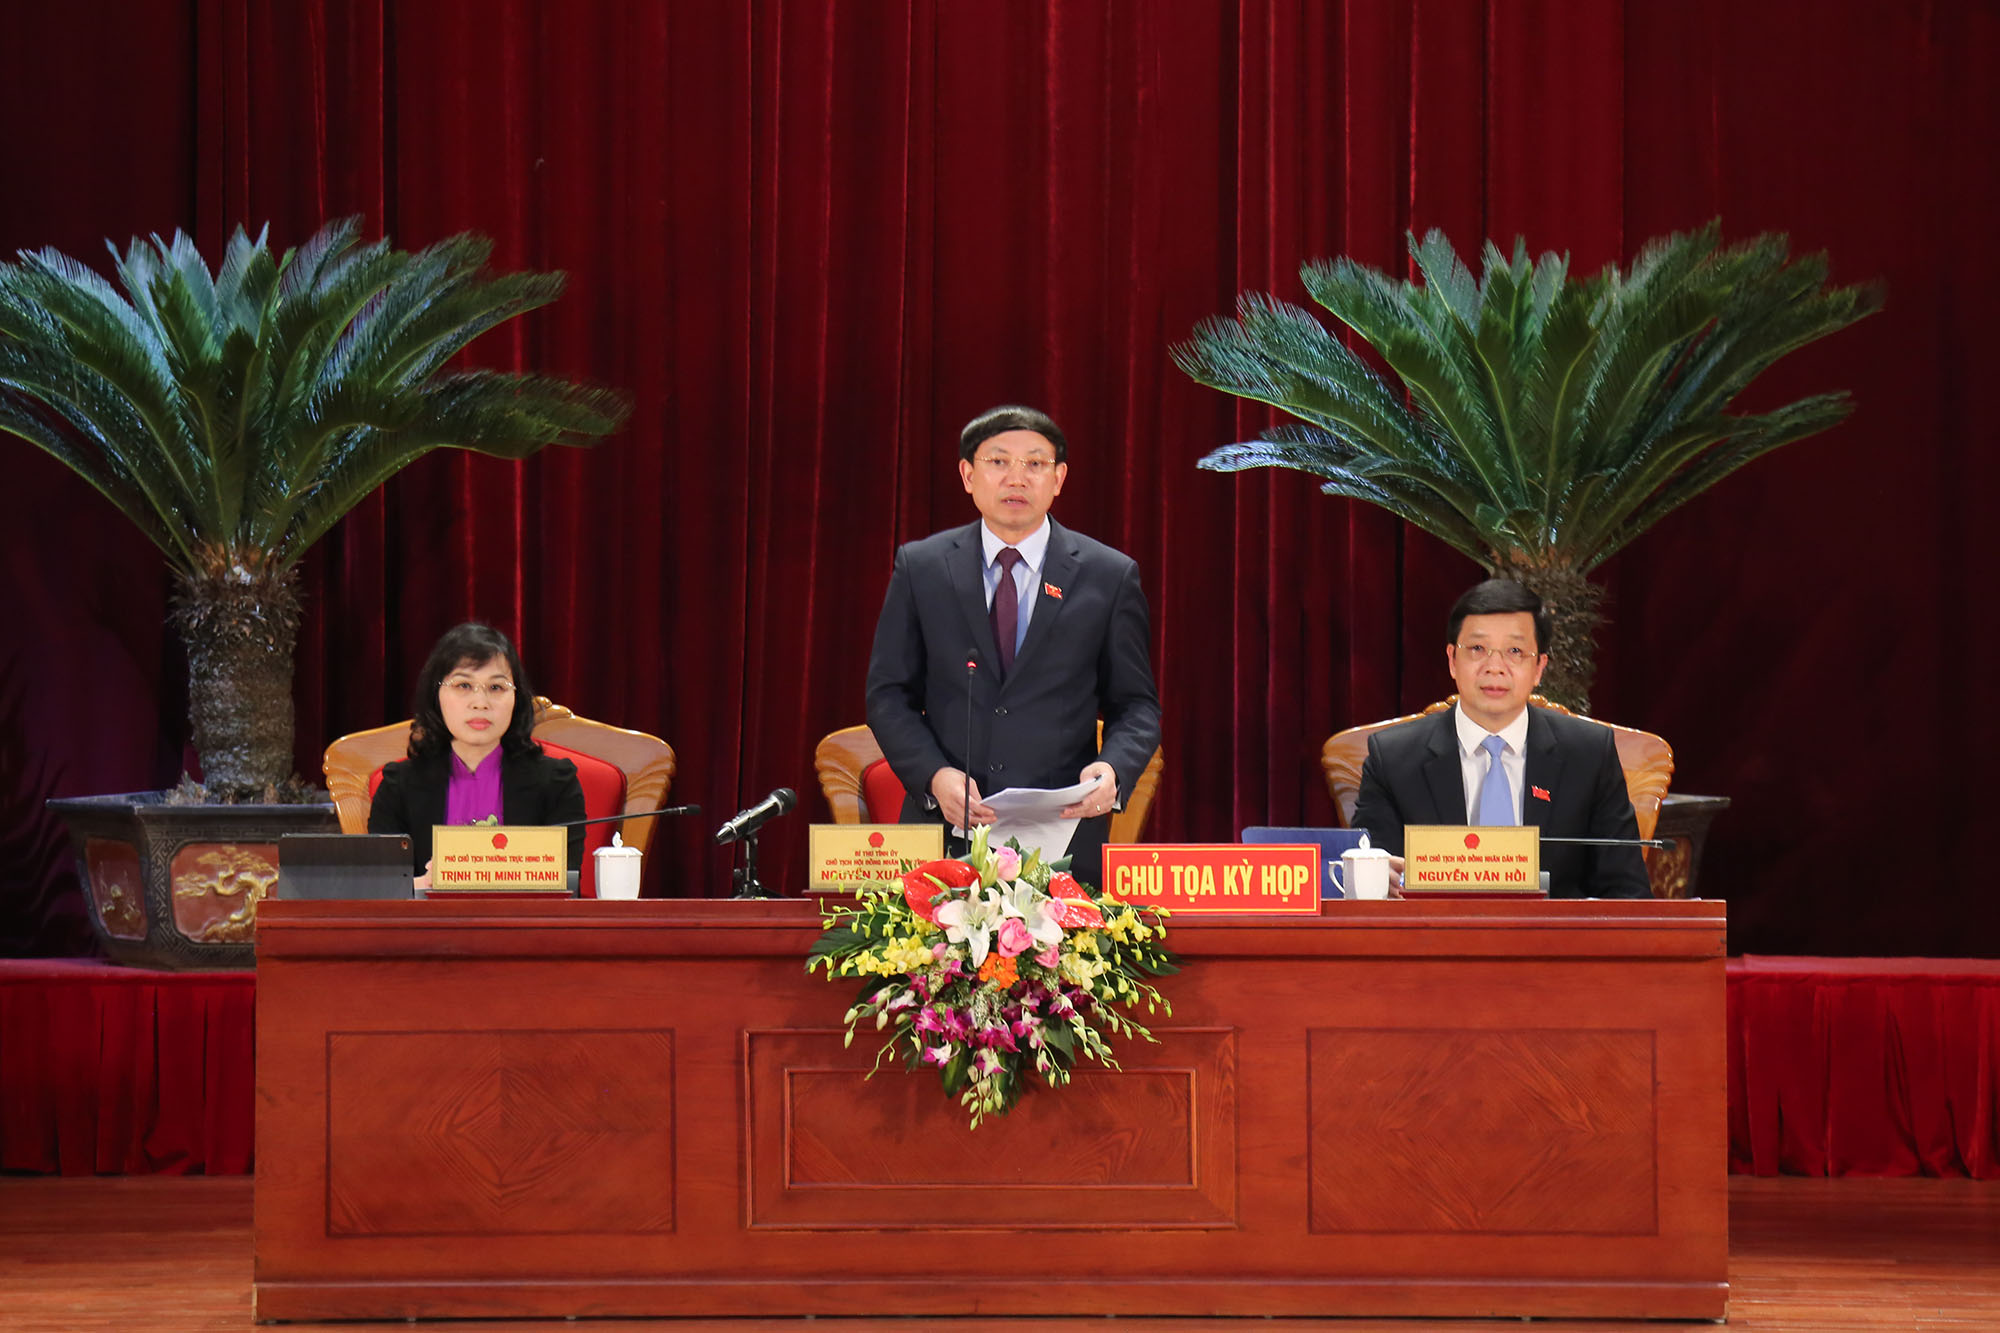 Đồng chí Nguyễn Xuân Ký, Bí thư Tỉnh ủy, Chủ tịch HĐND tỉnh điều hành phiên chất vấn.